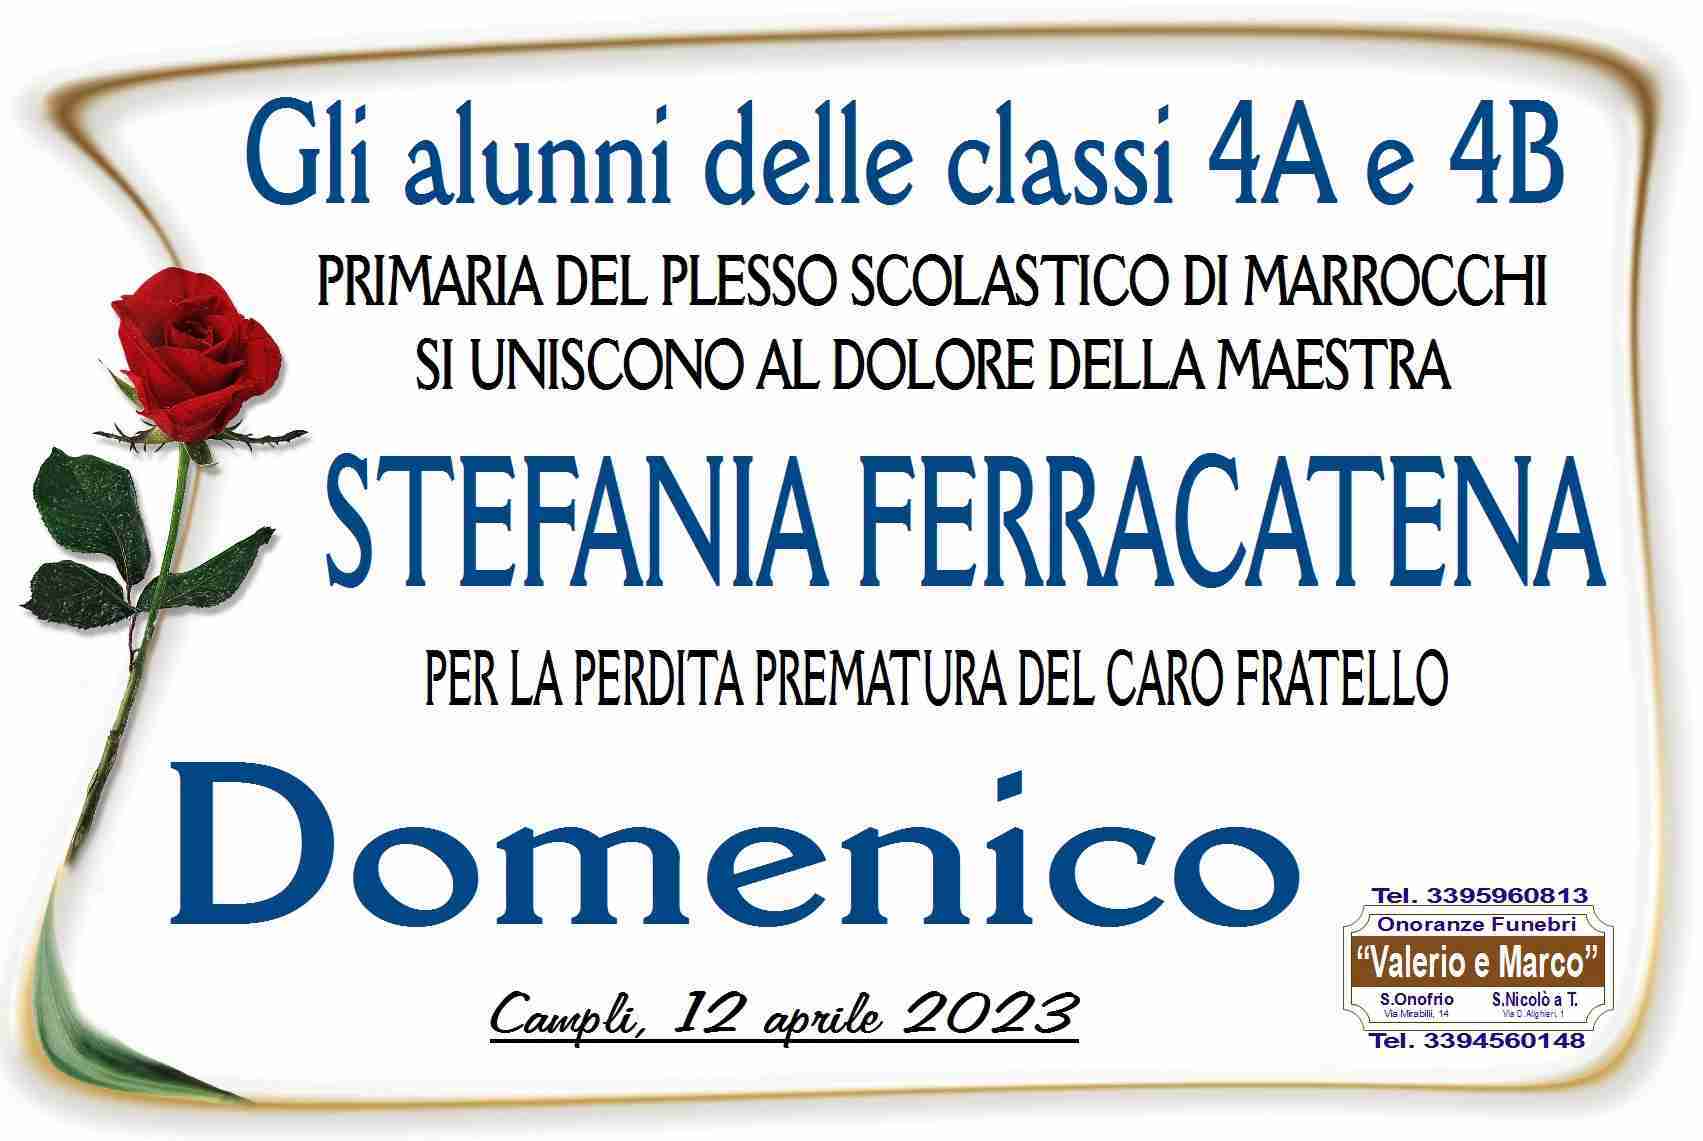 Domenico Ferracatena